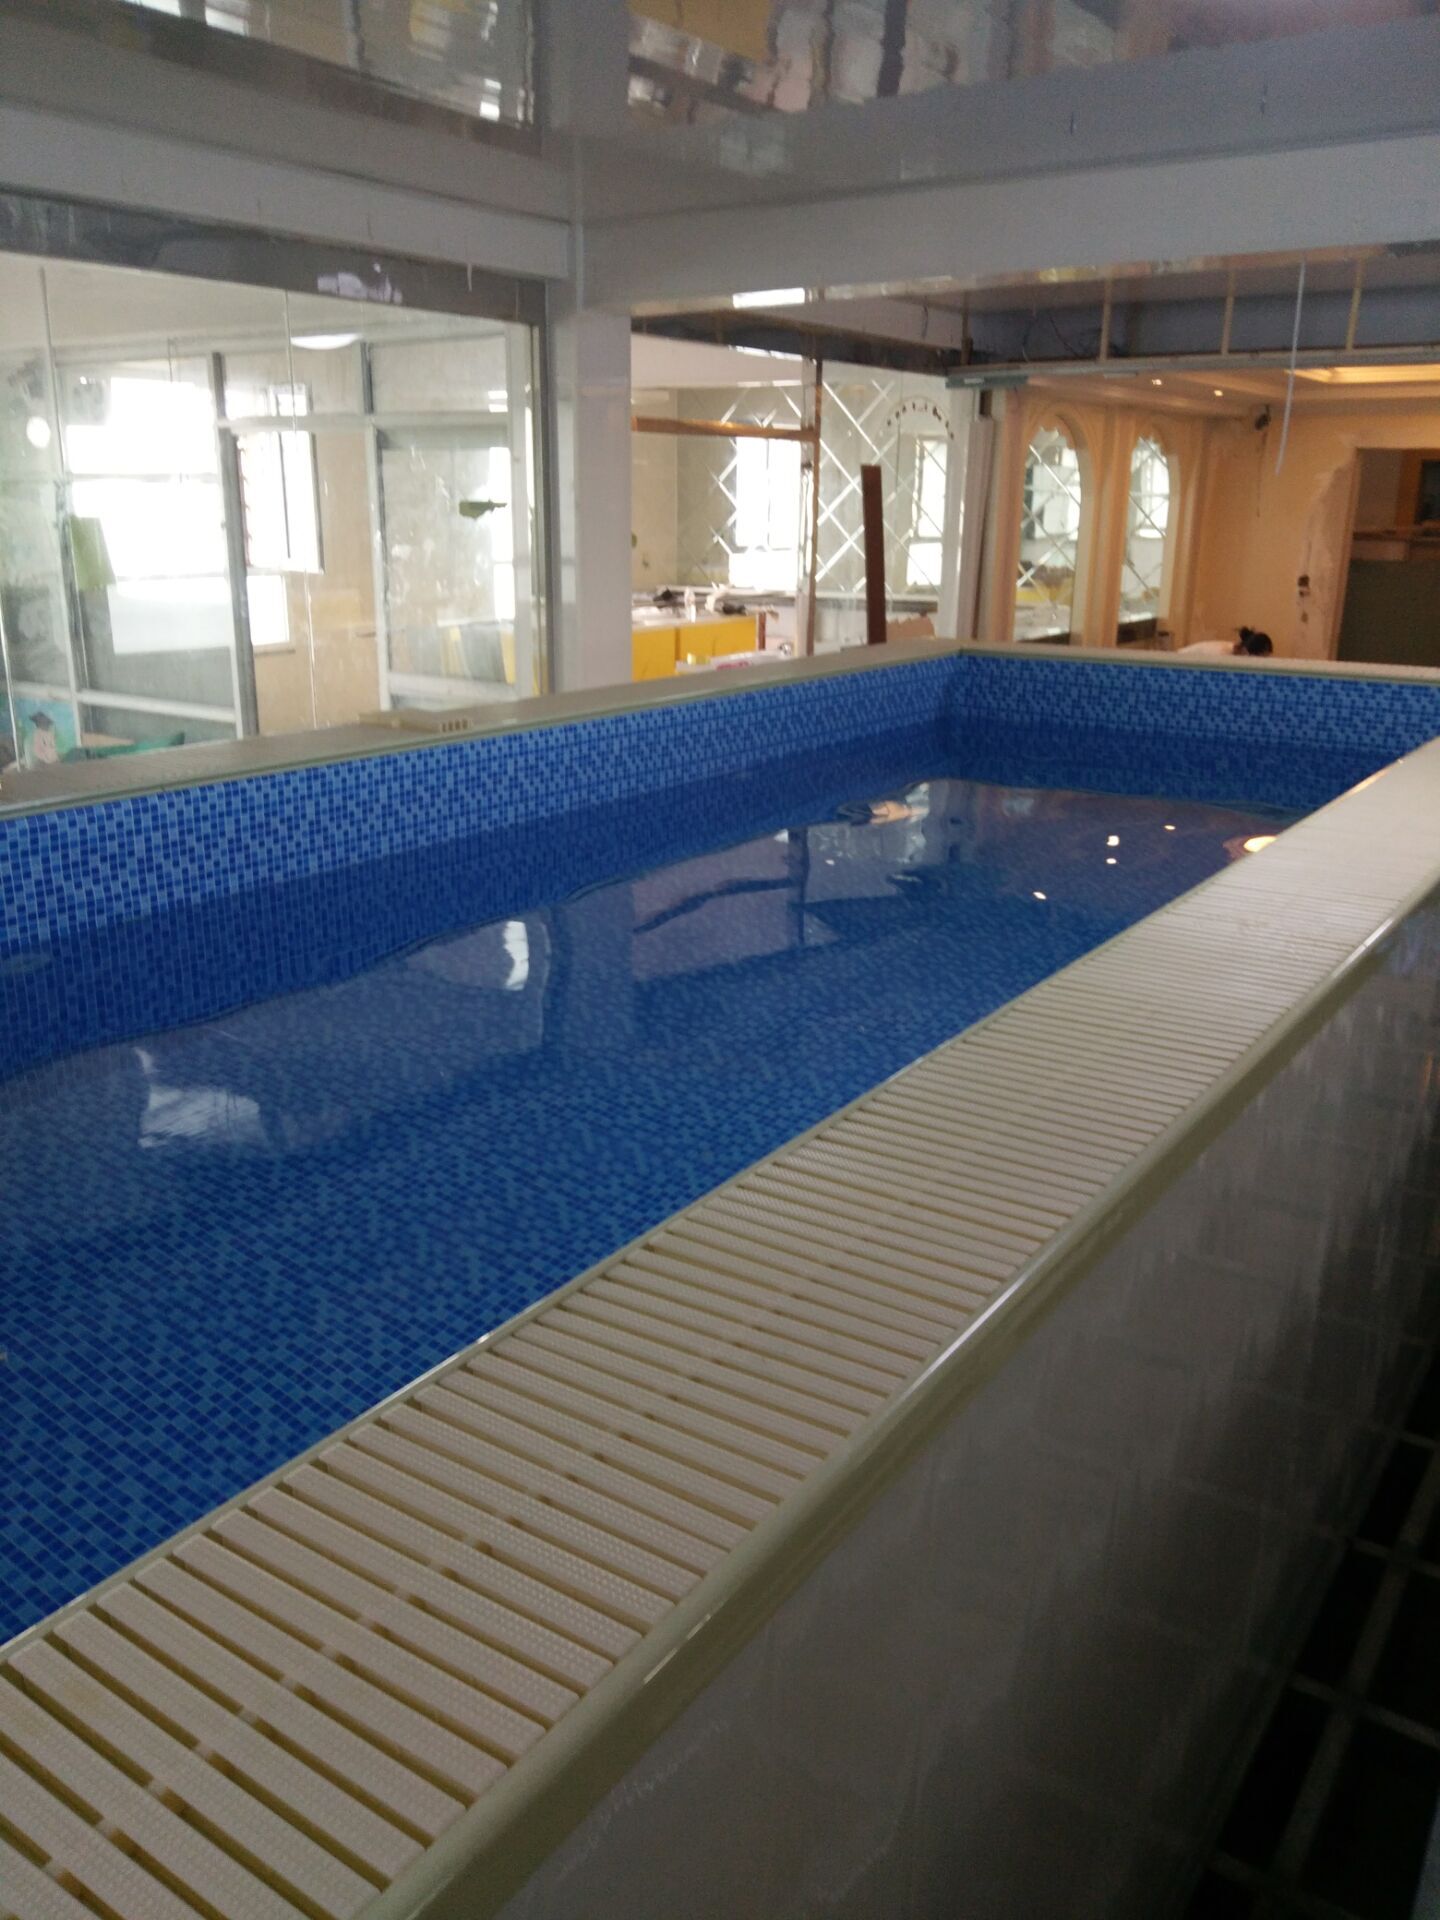 游泳池设备厂家 天津图片